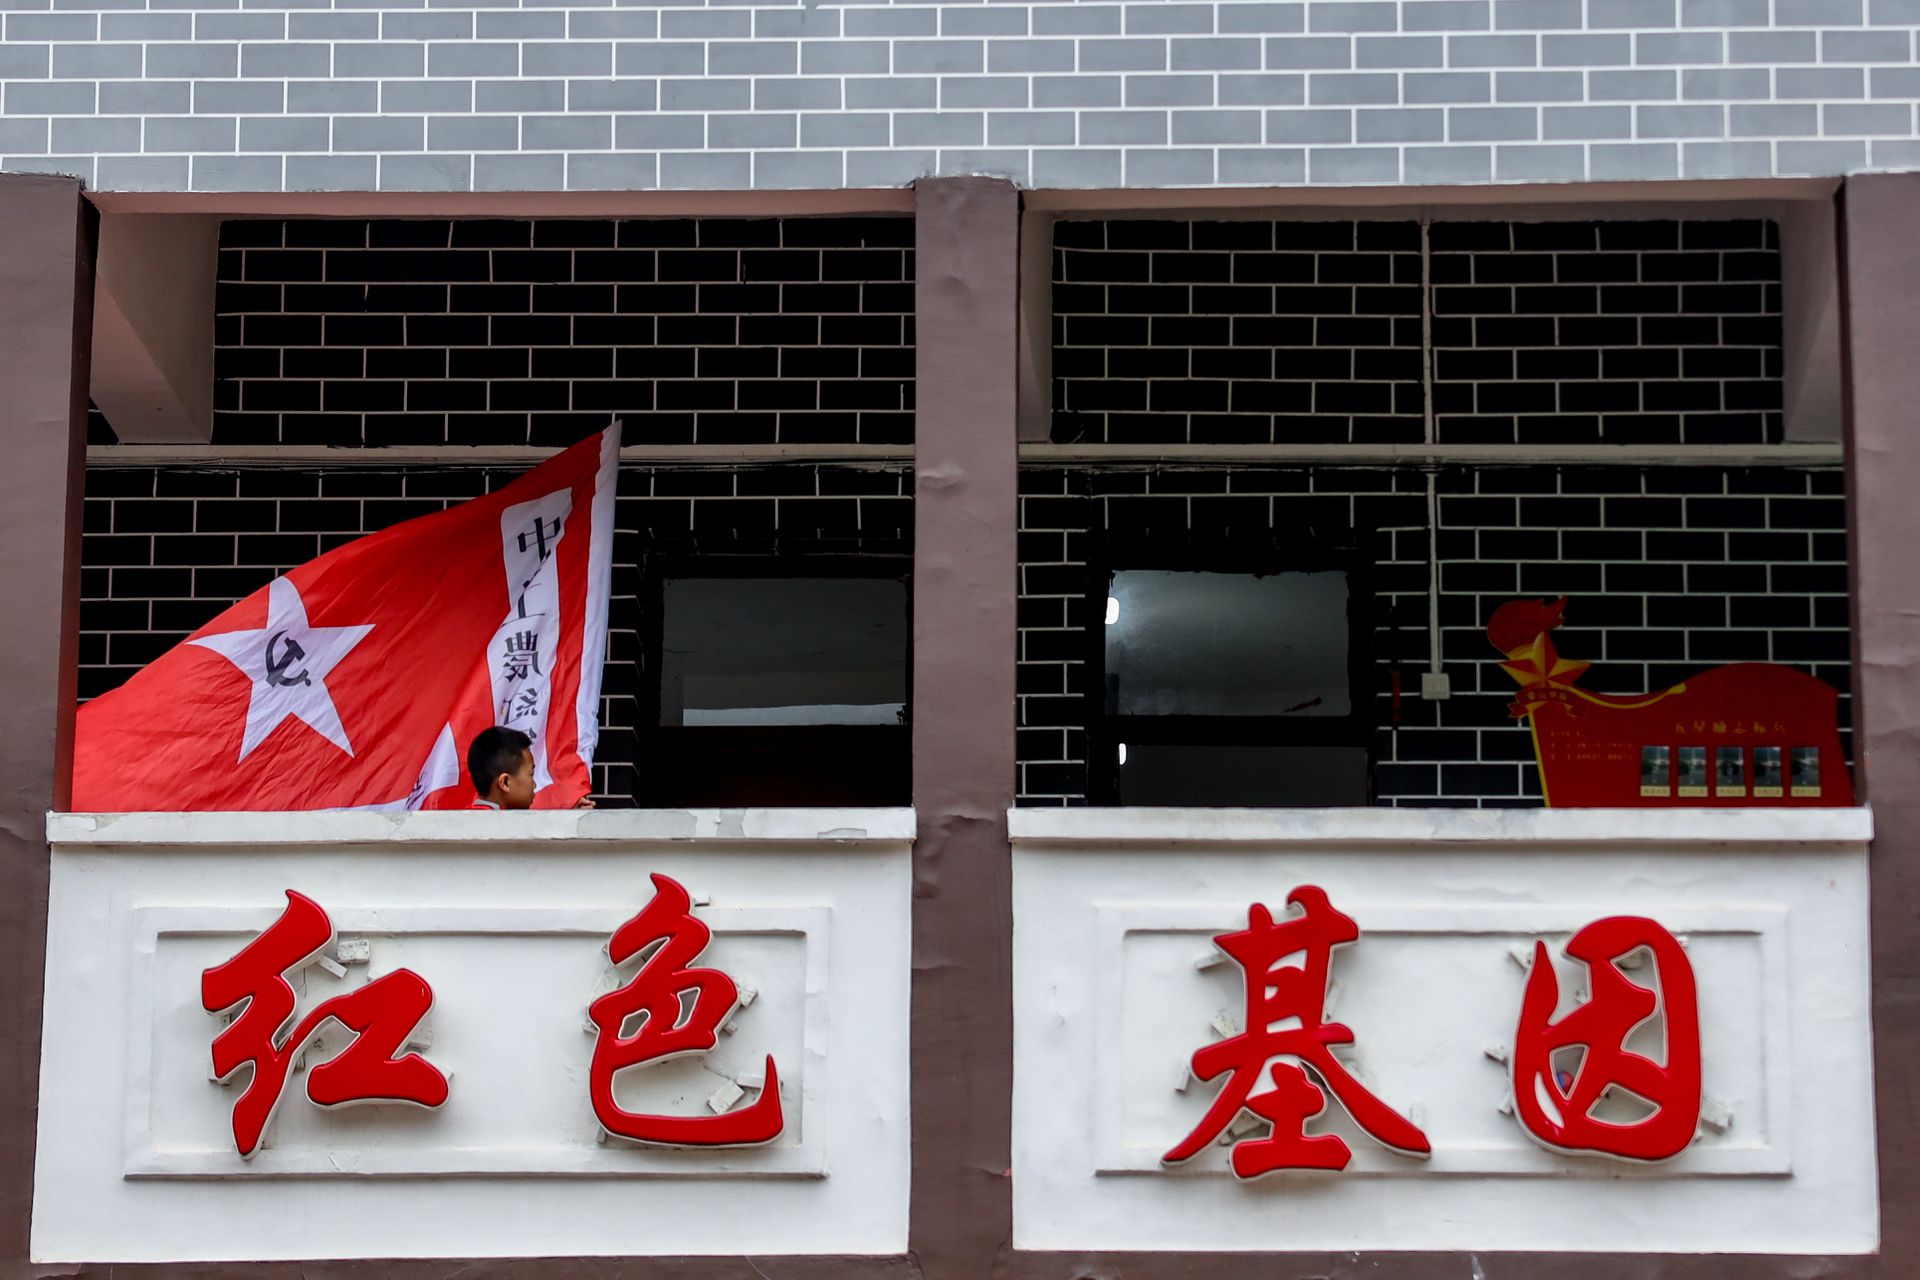 探访中国第一所红军小学 每天穿戴军装红军帽上学